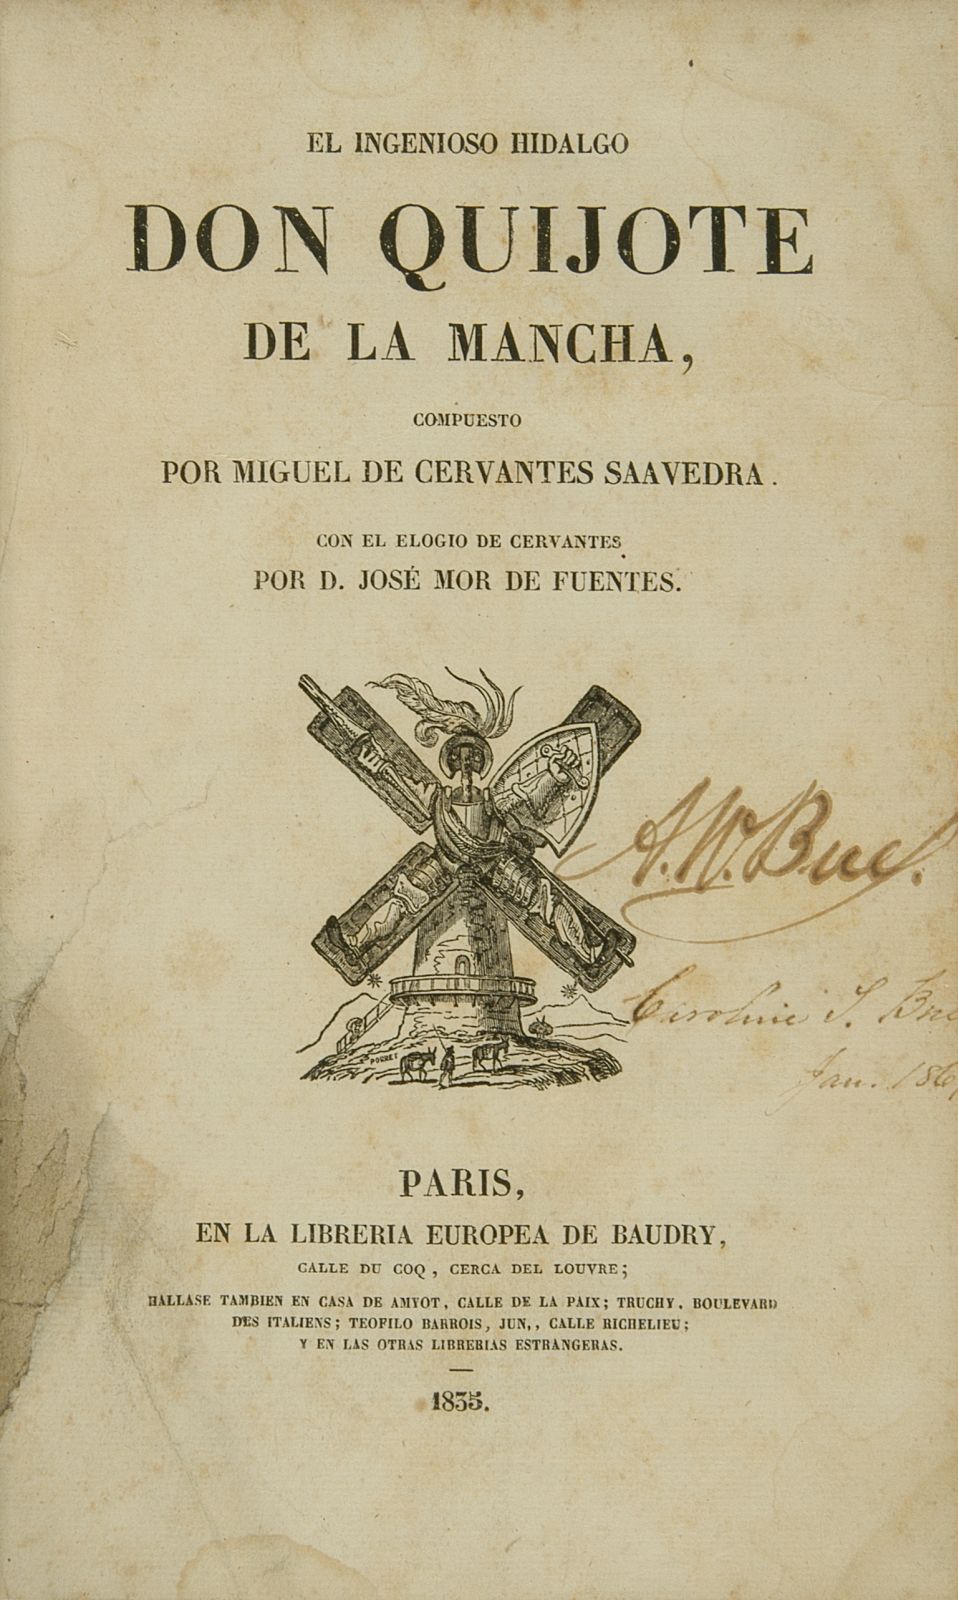 Libros En Espanol El Ingenioso Hidalgo Don Quijote De La Mancha My Spanish In Spain